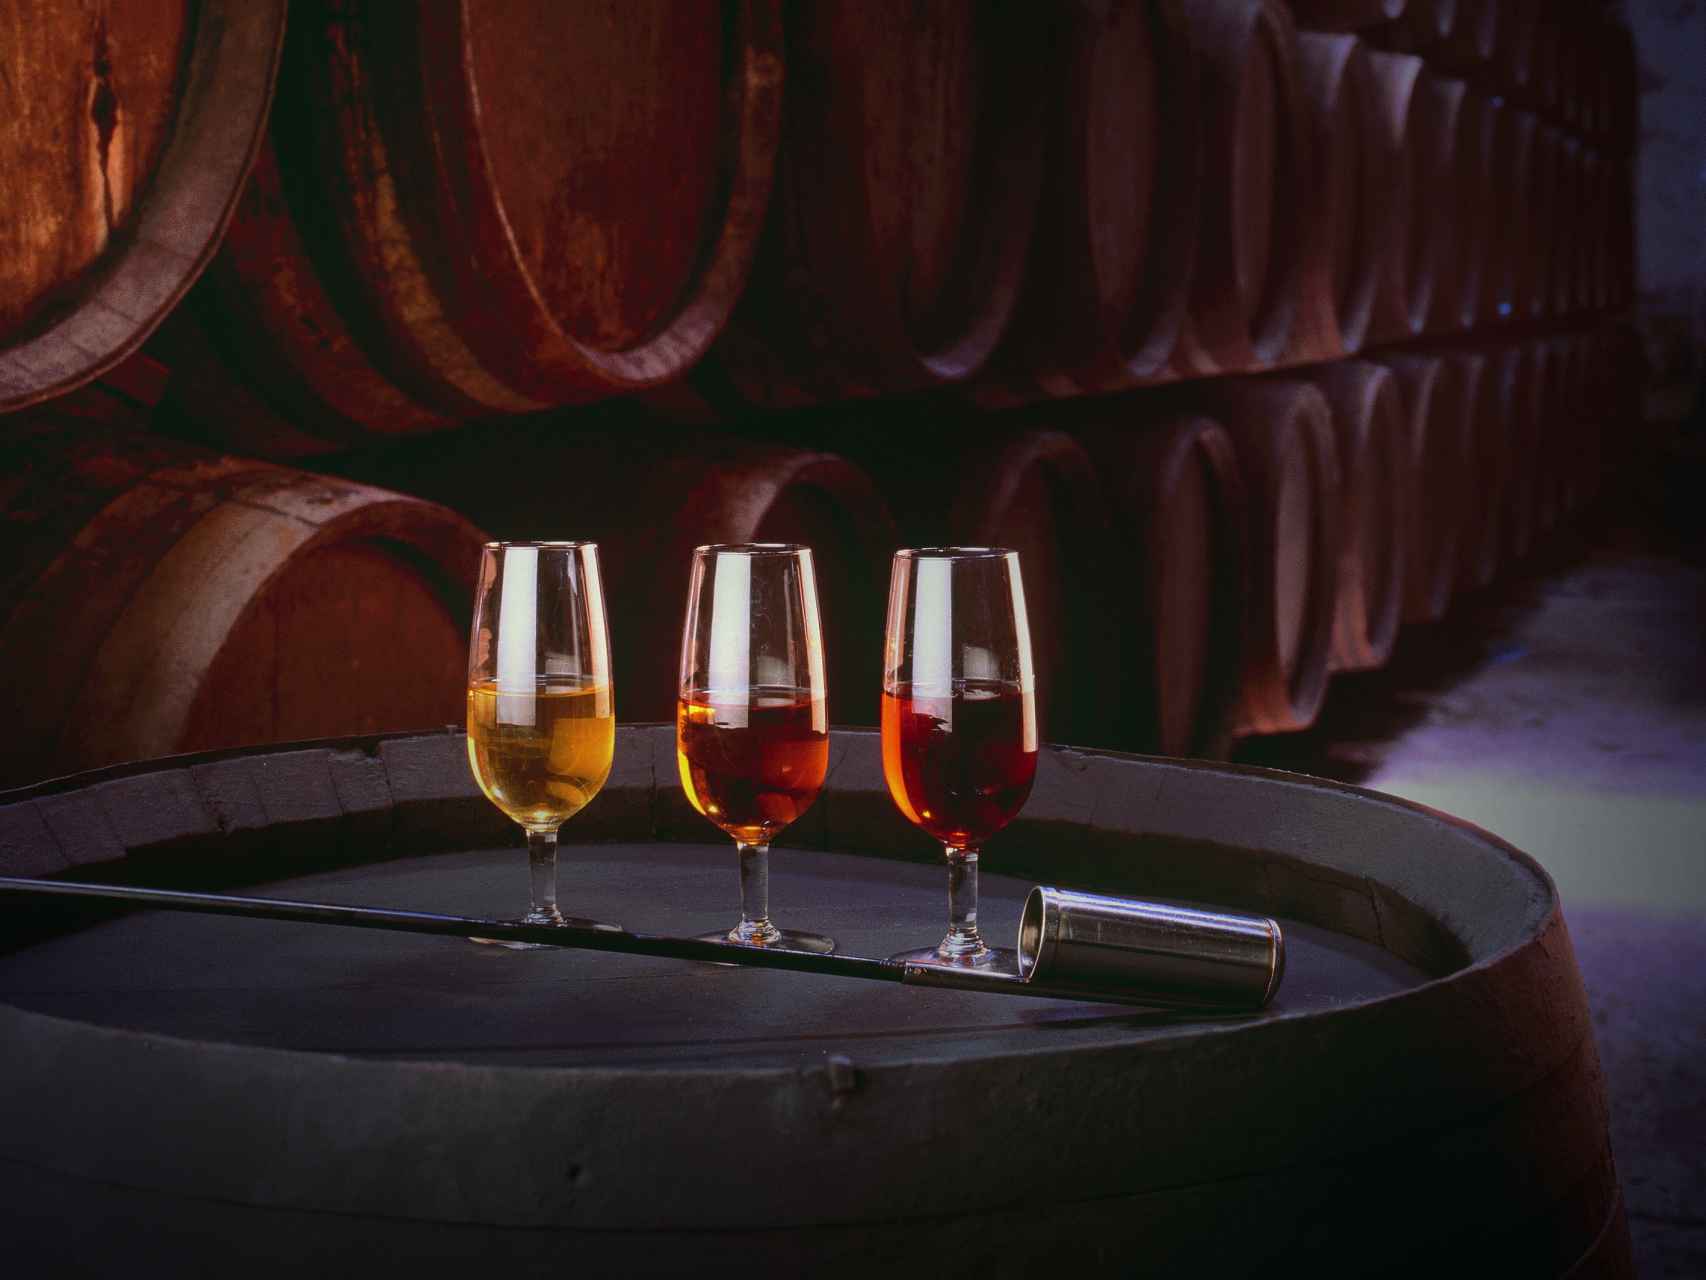 Cata de vinos en una de las bodegas centenarias de Jerez.